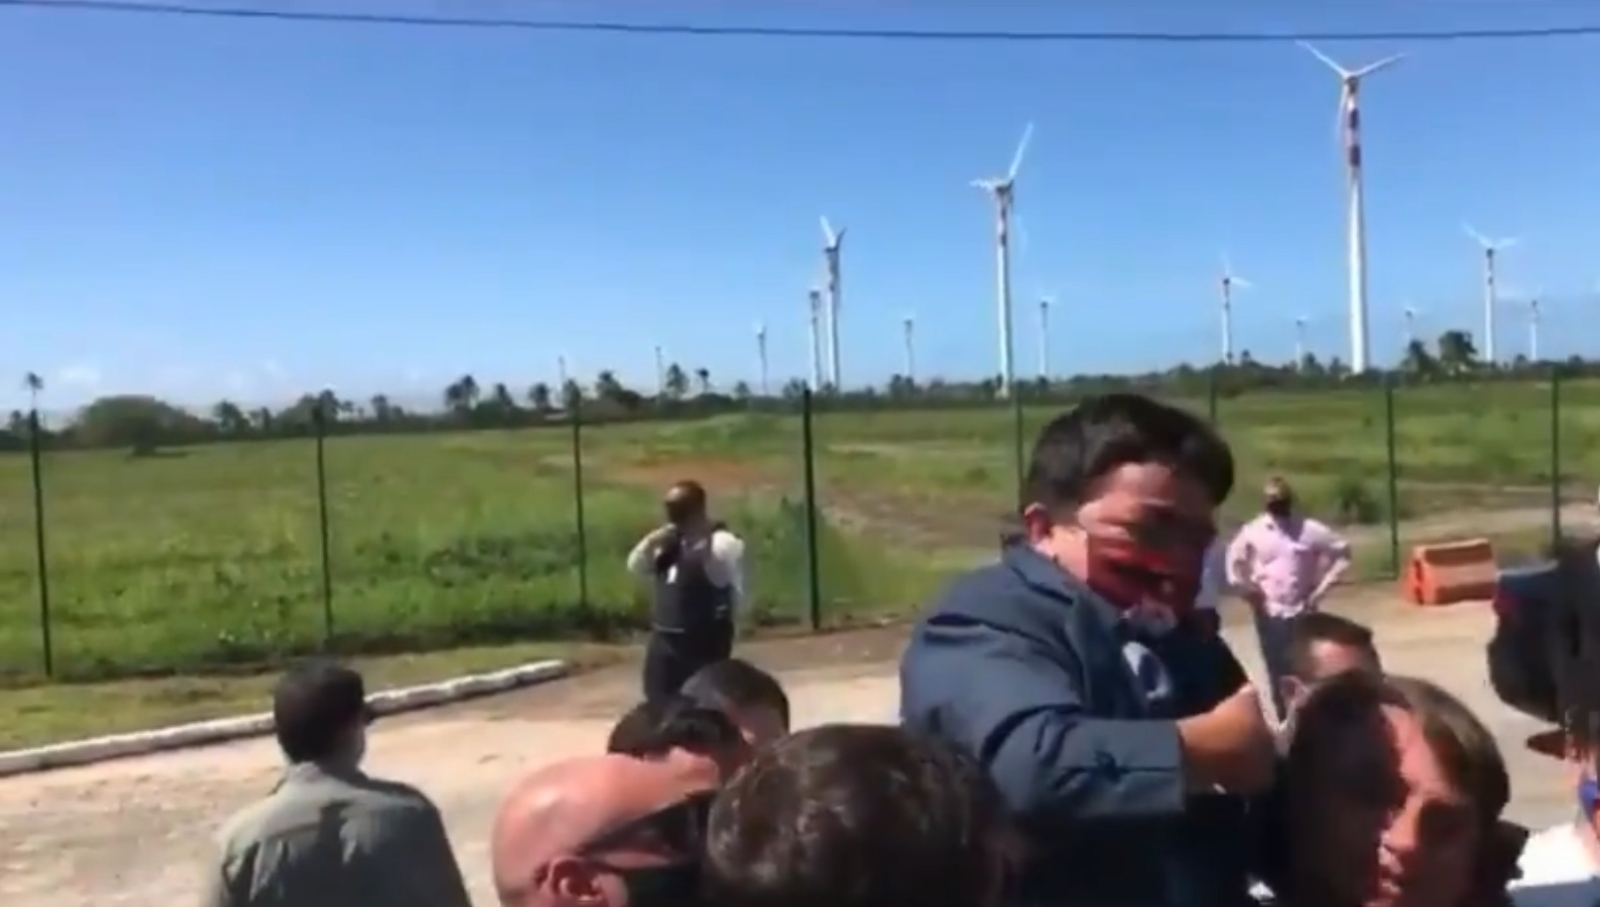 Bolsonaro carga a un hombre de talla baja pensando que era un niño (VIDEO)